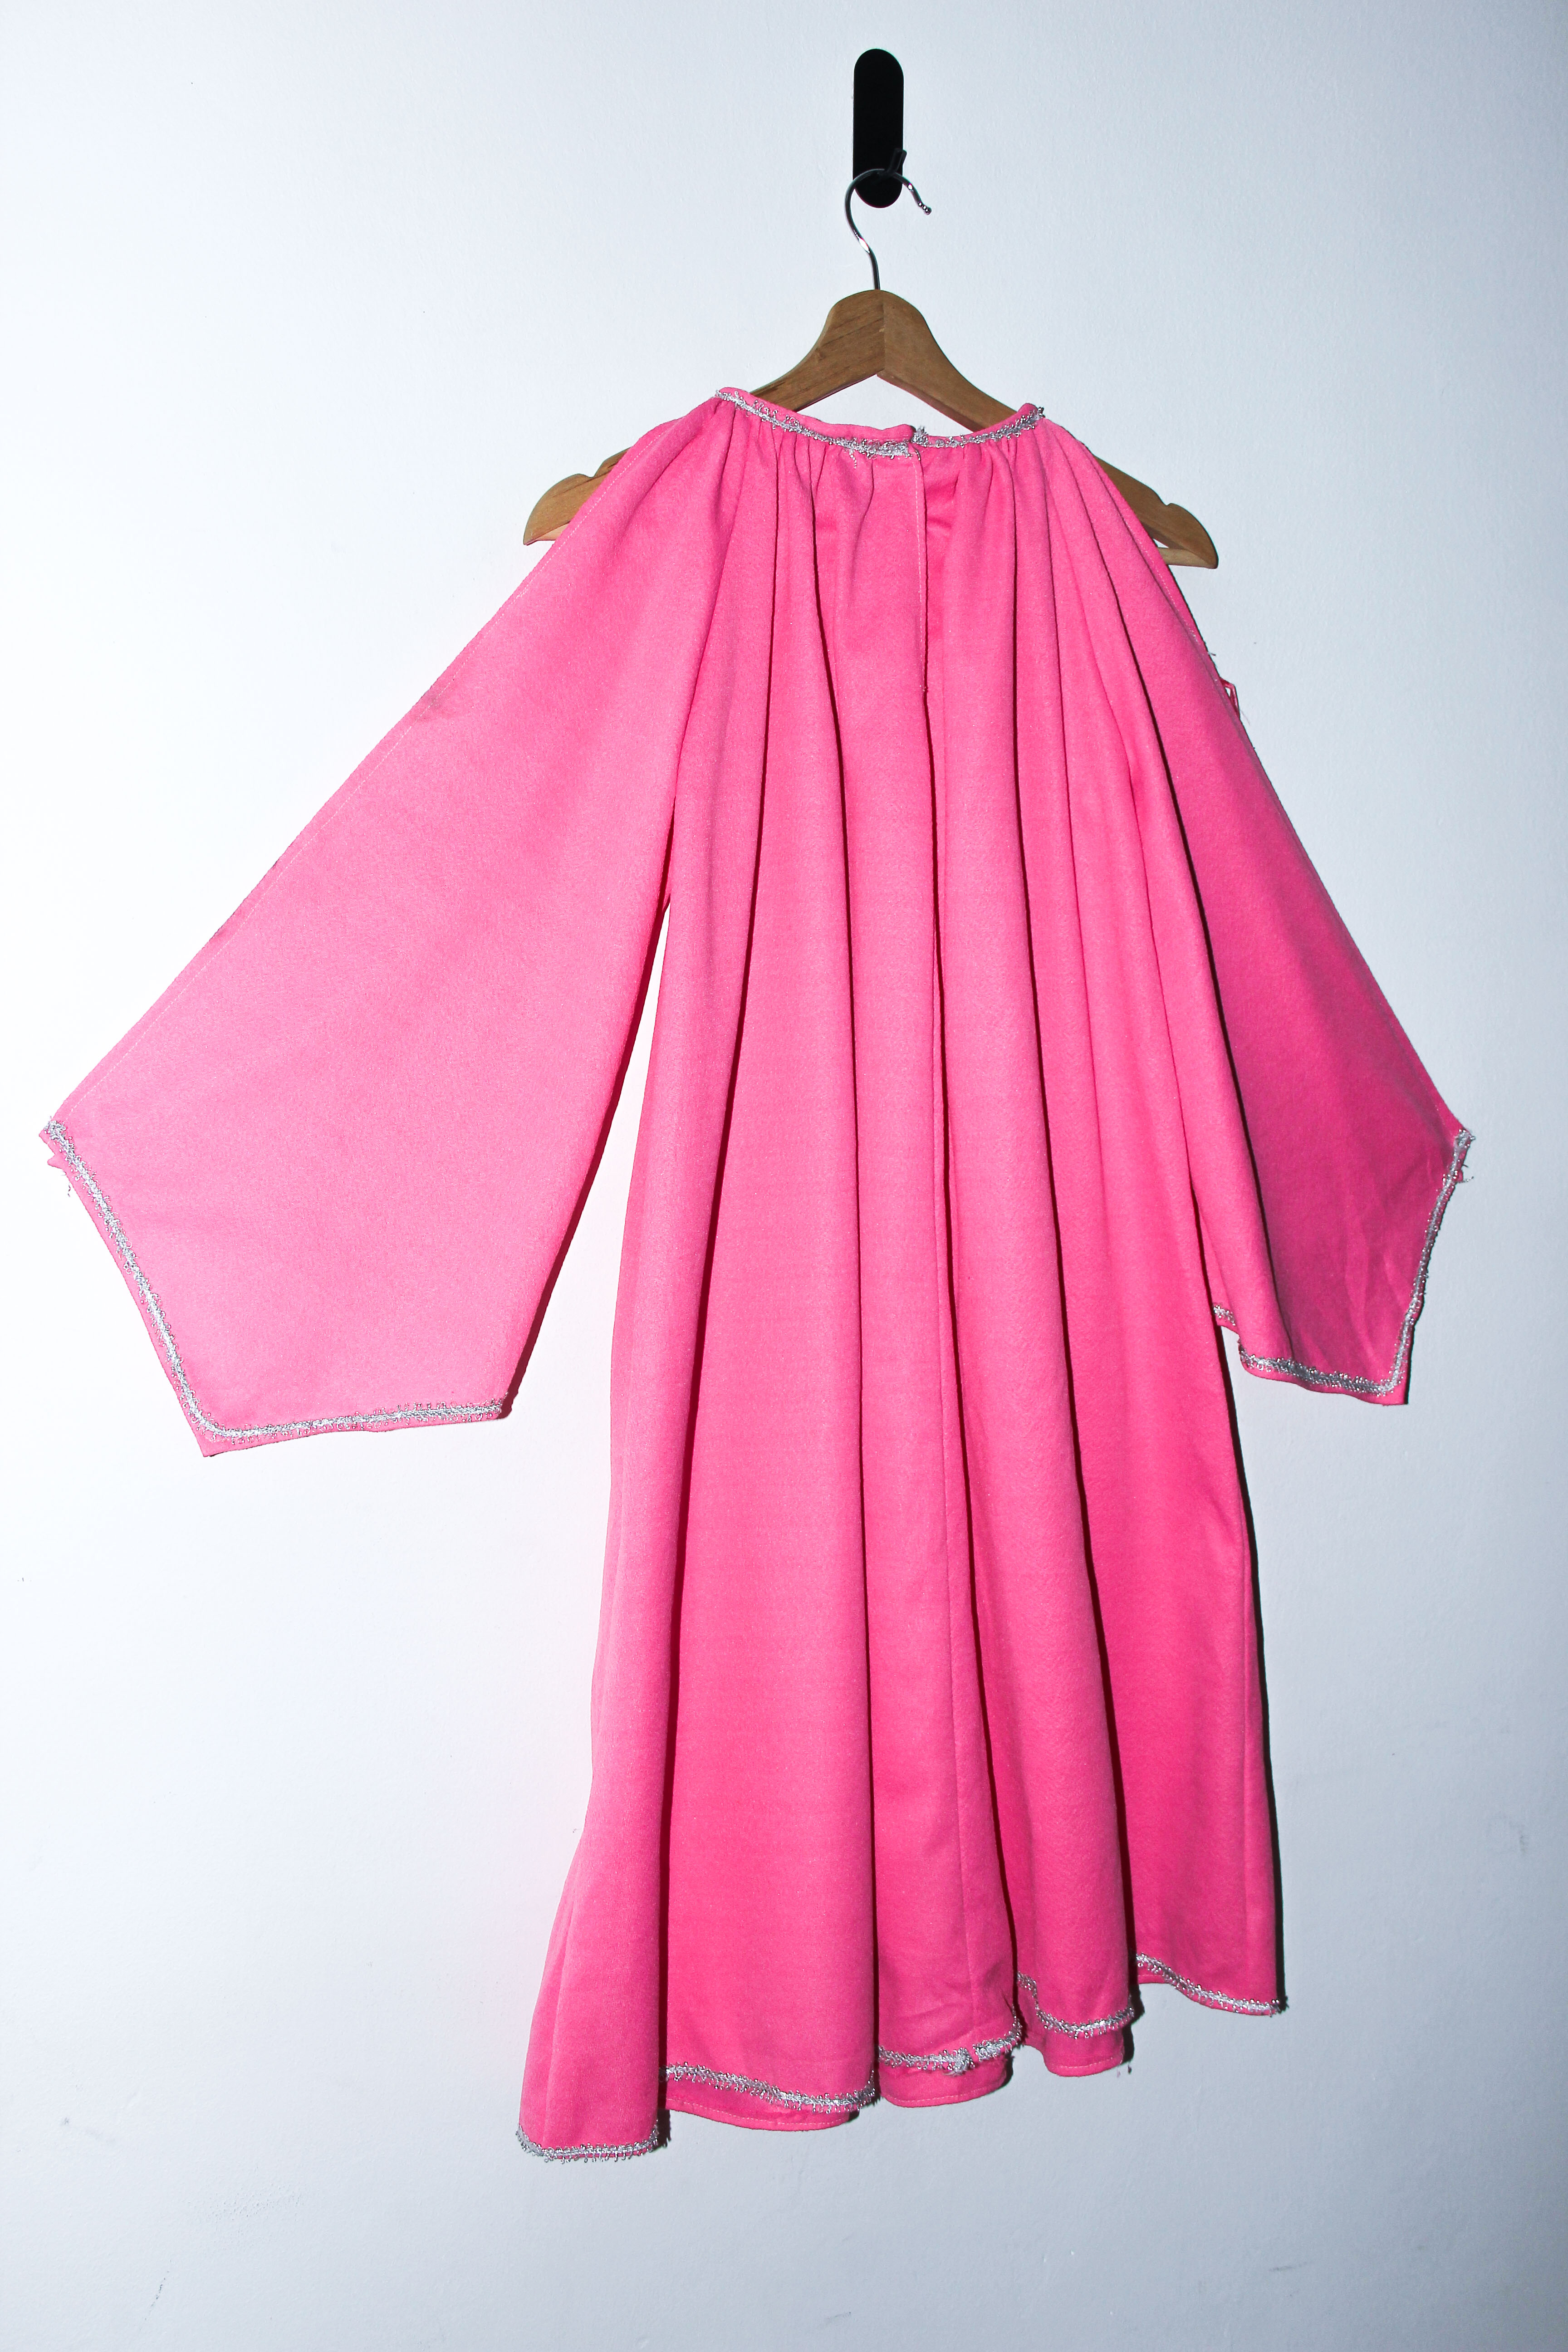 Vestido power pink 1960s